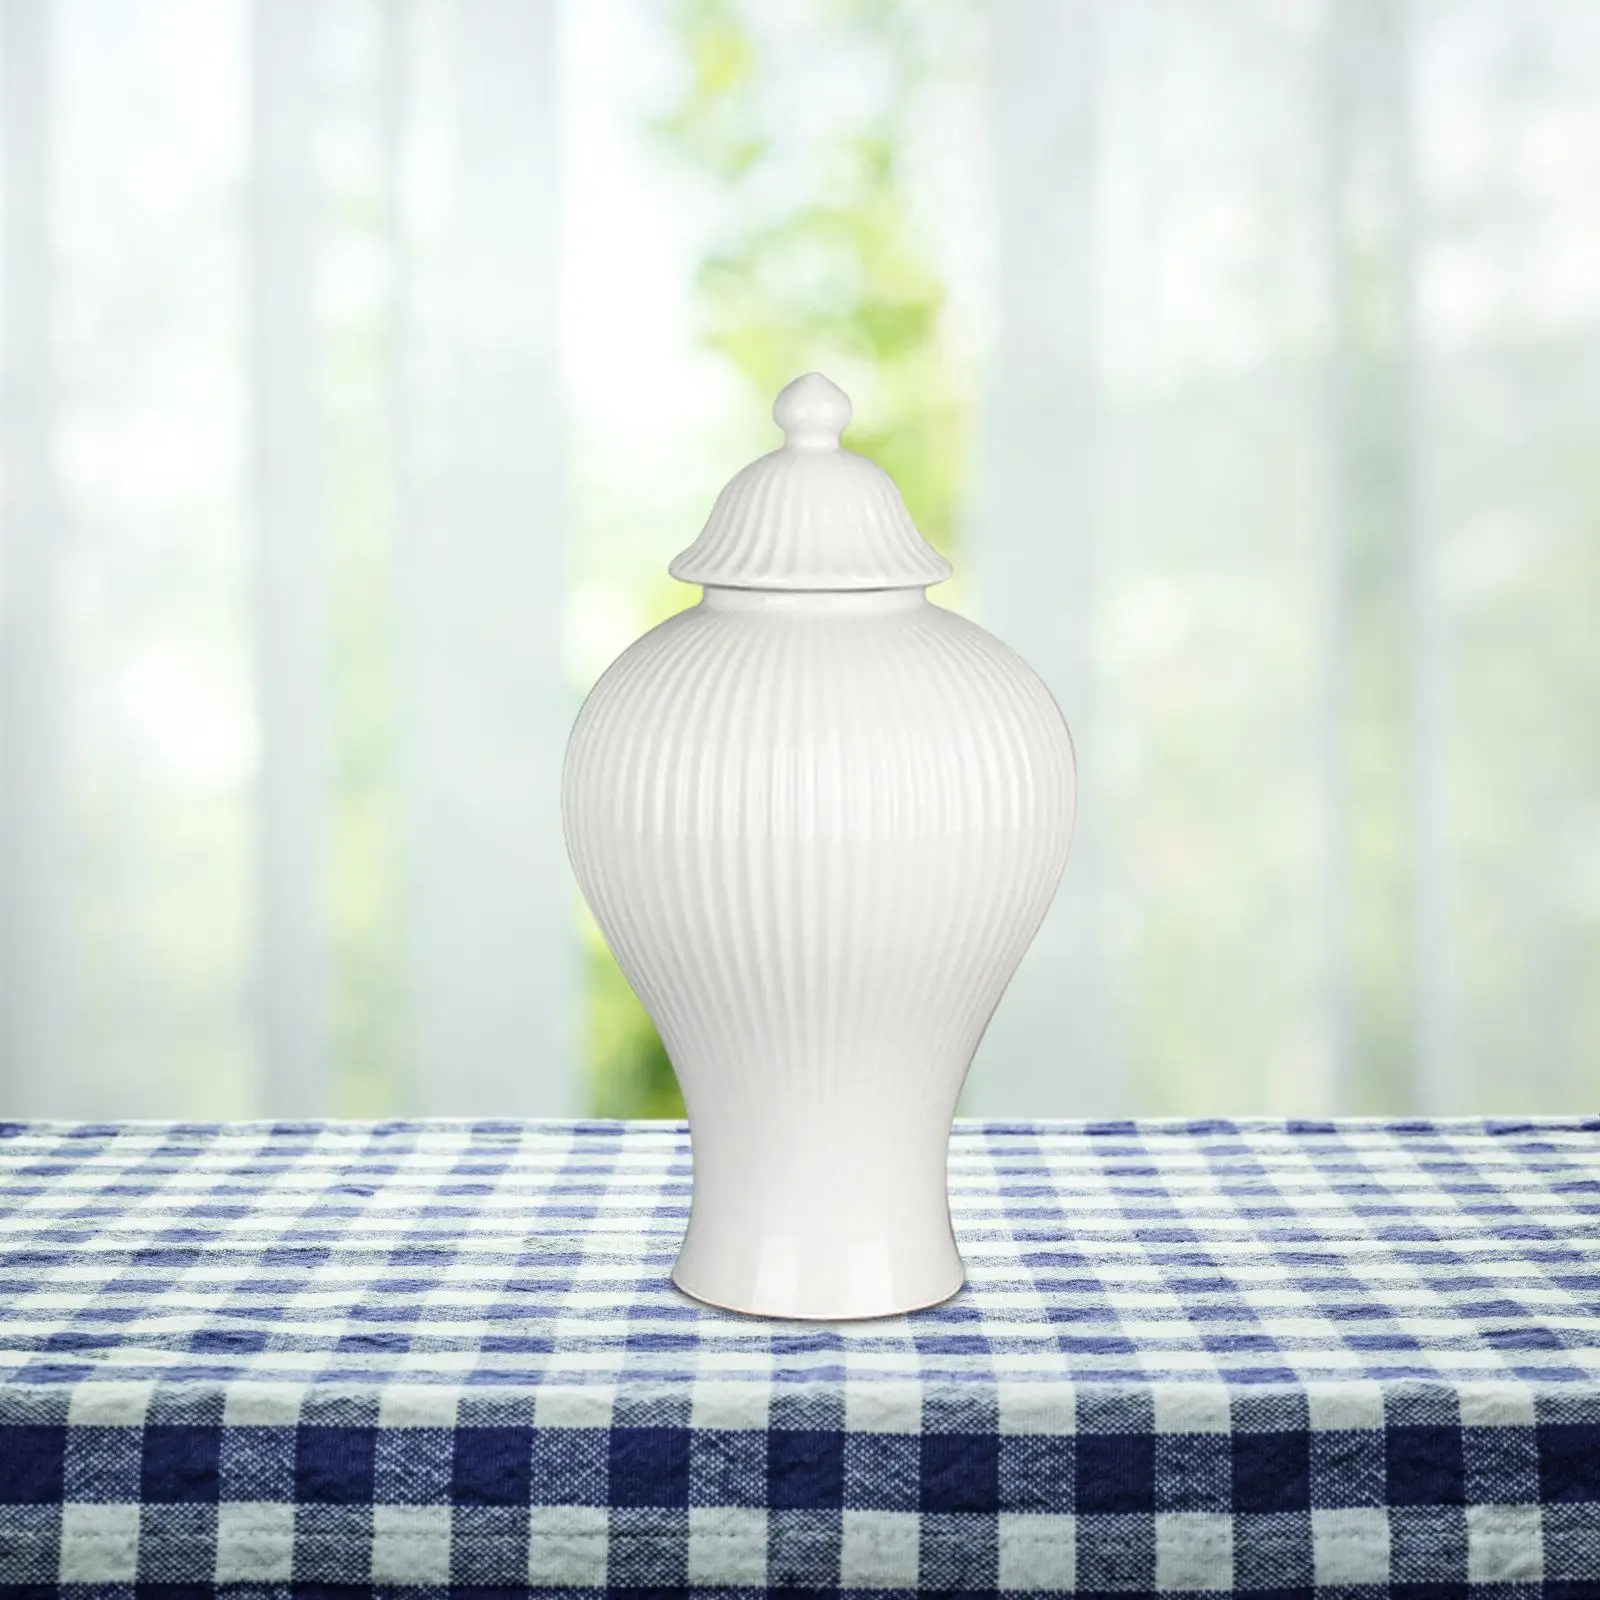 Ceramic Ginger Jar Decorative Jars with Lid Flower Vase Table Centerpiece for